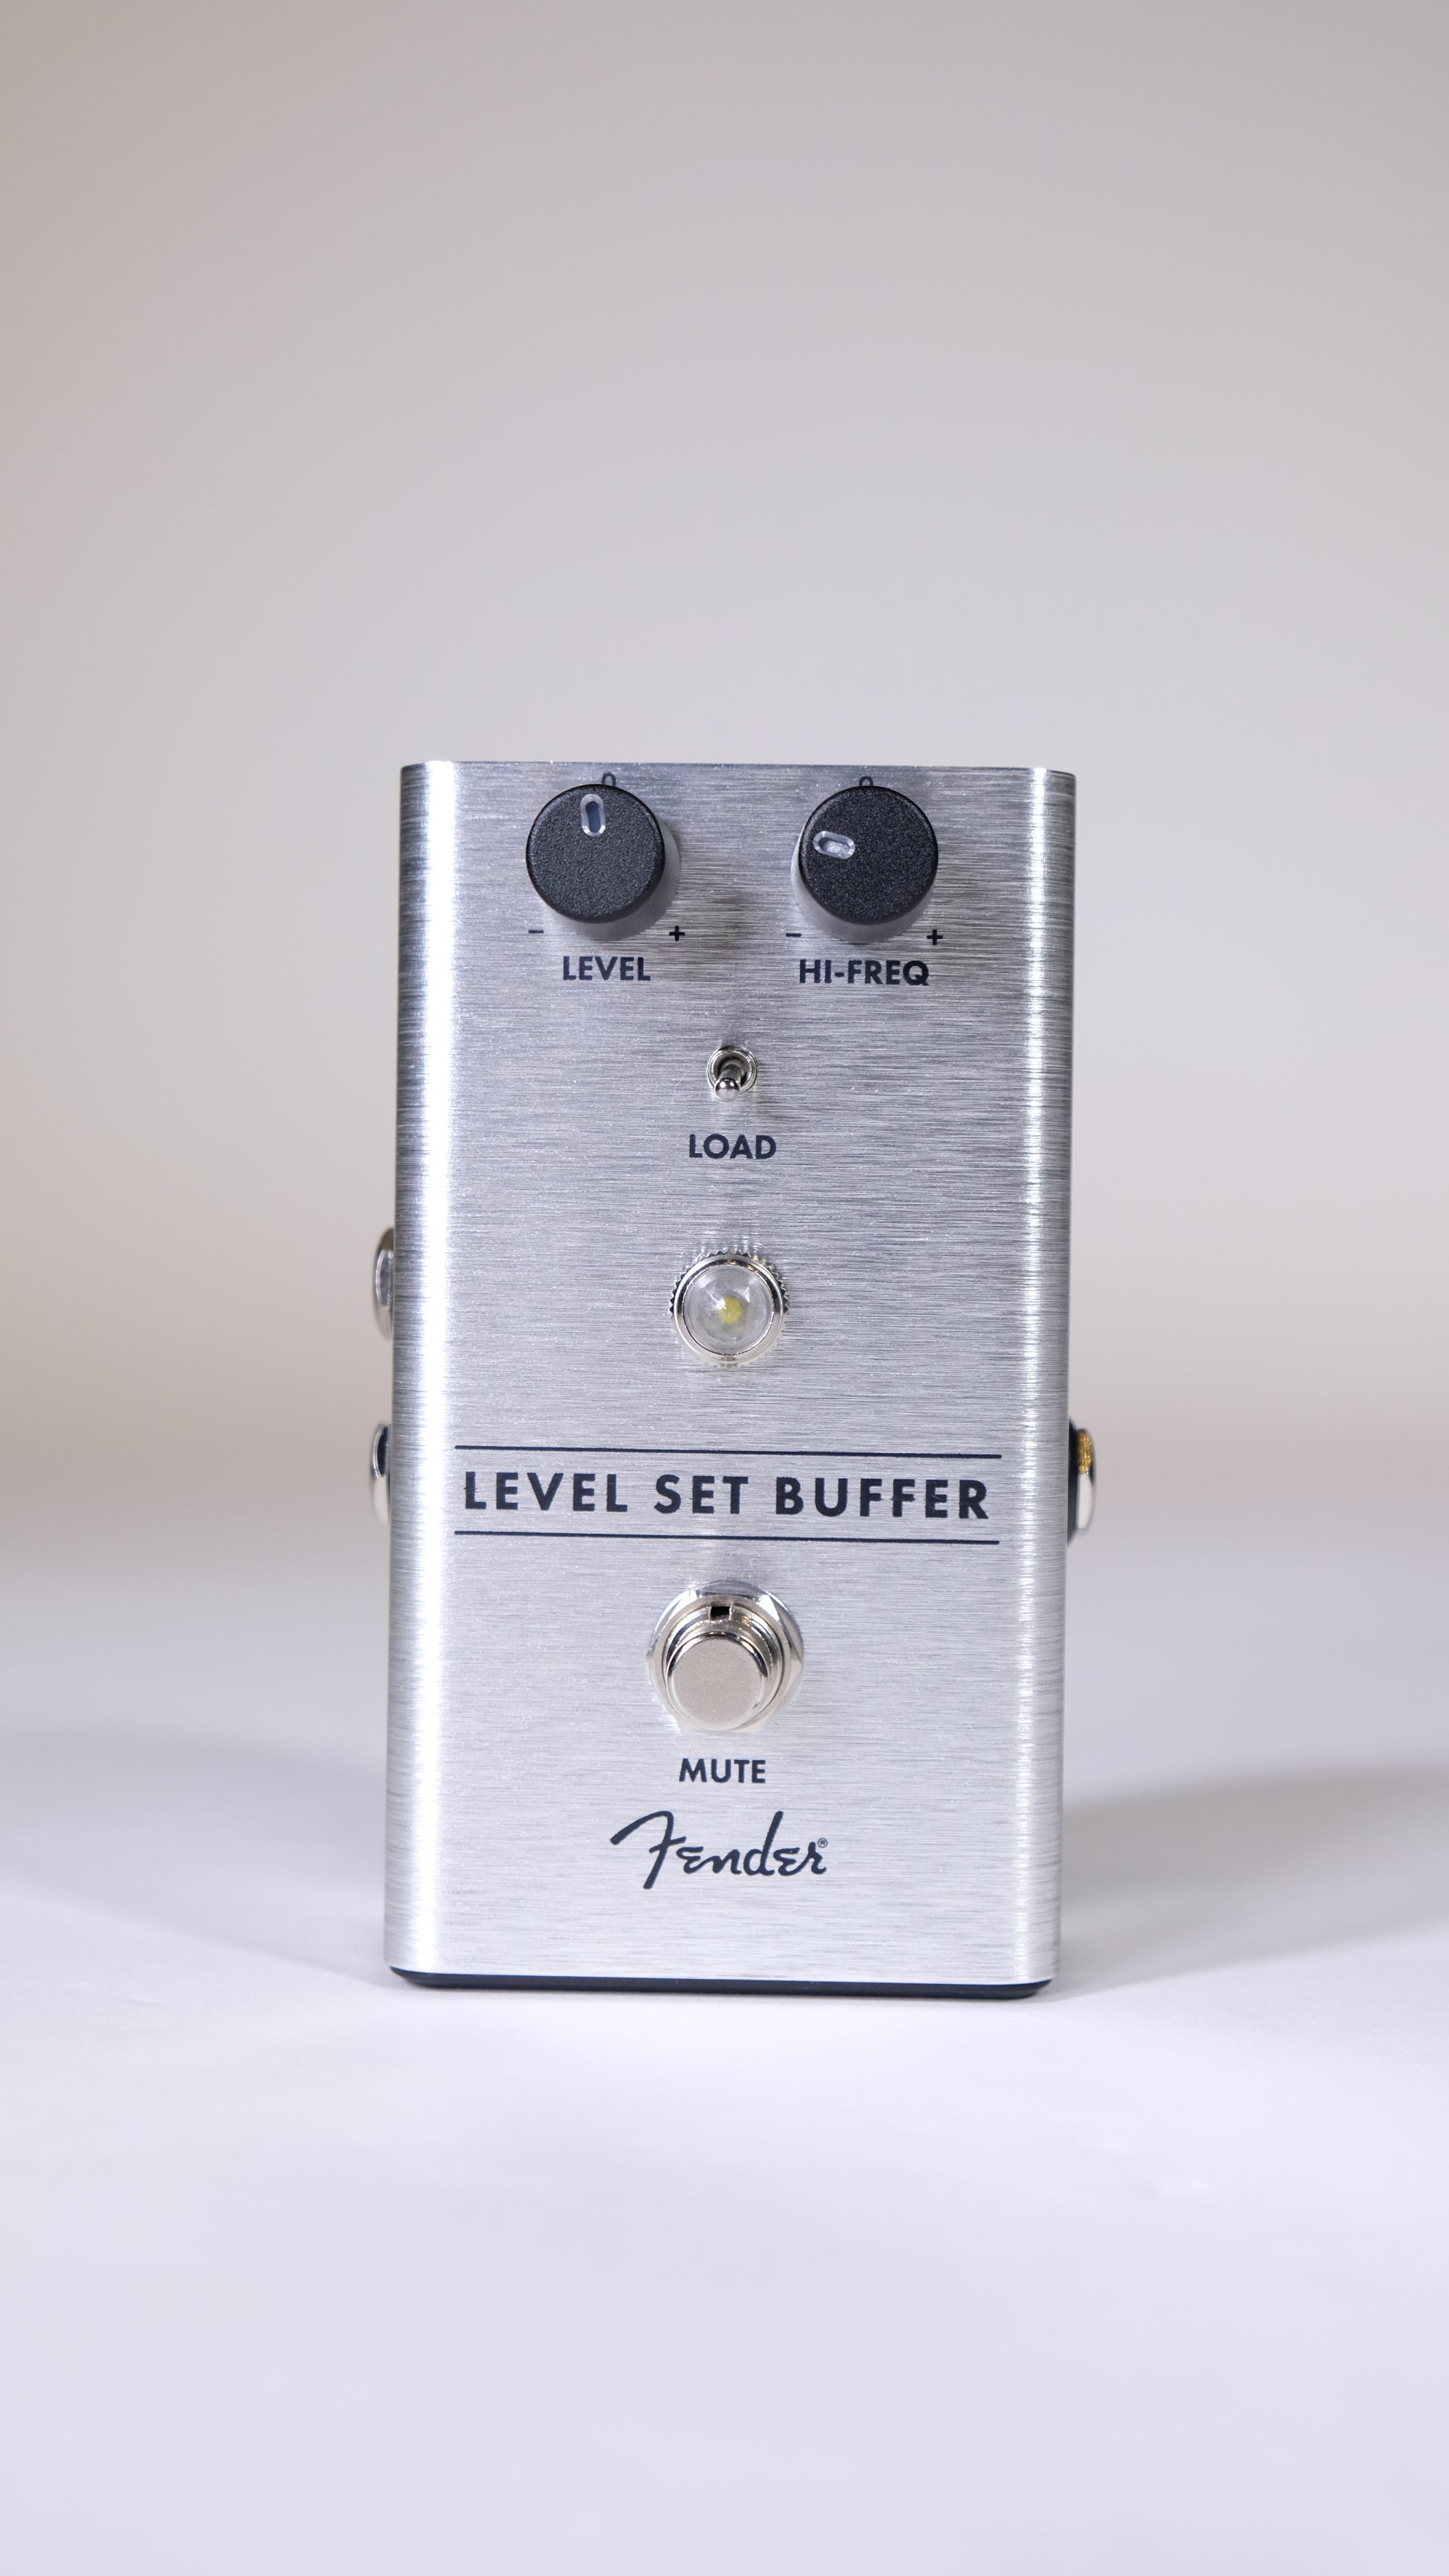 Fender Level Set Buffer - Level Set Buffer